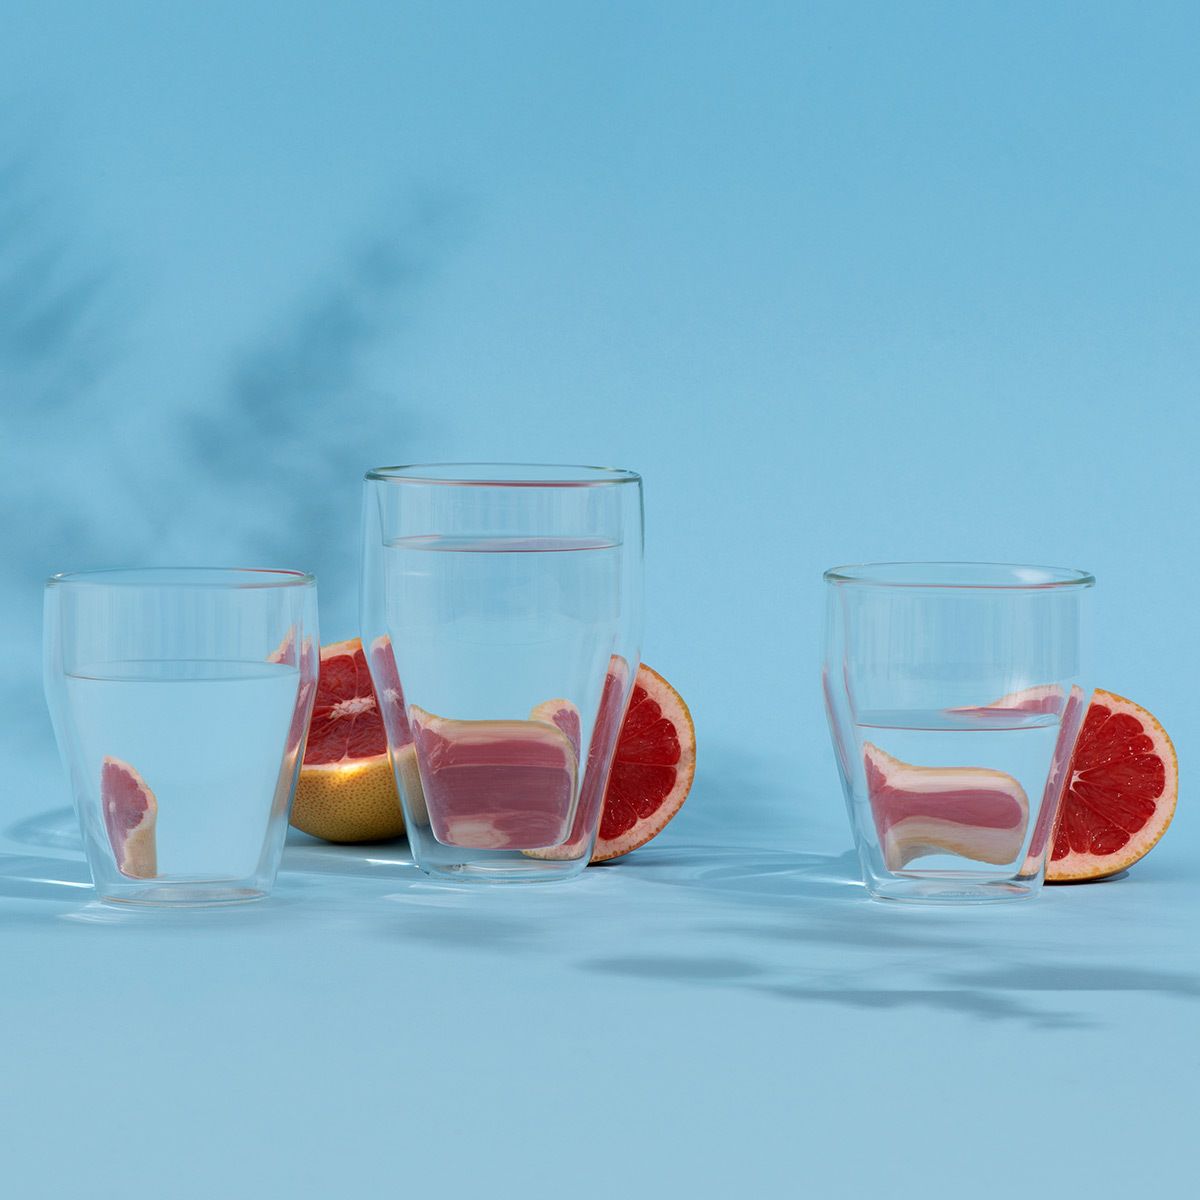 Bodum Titlis Glass dubbelväggt transparent 0,25 L, 2 st.